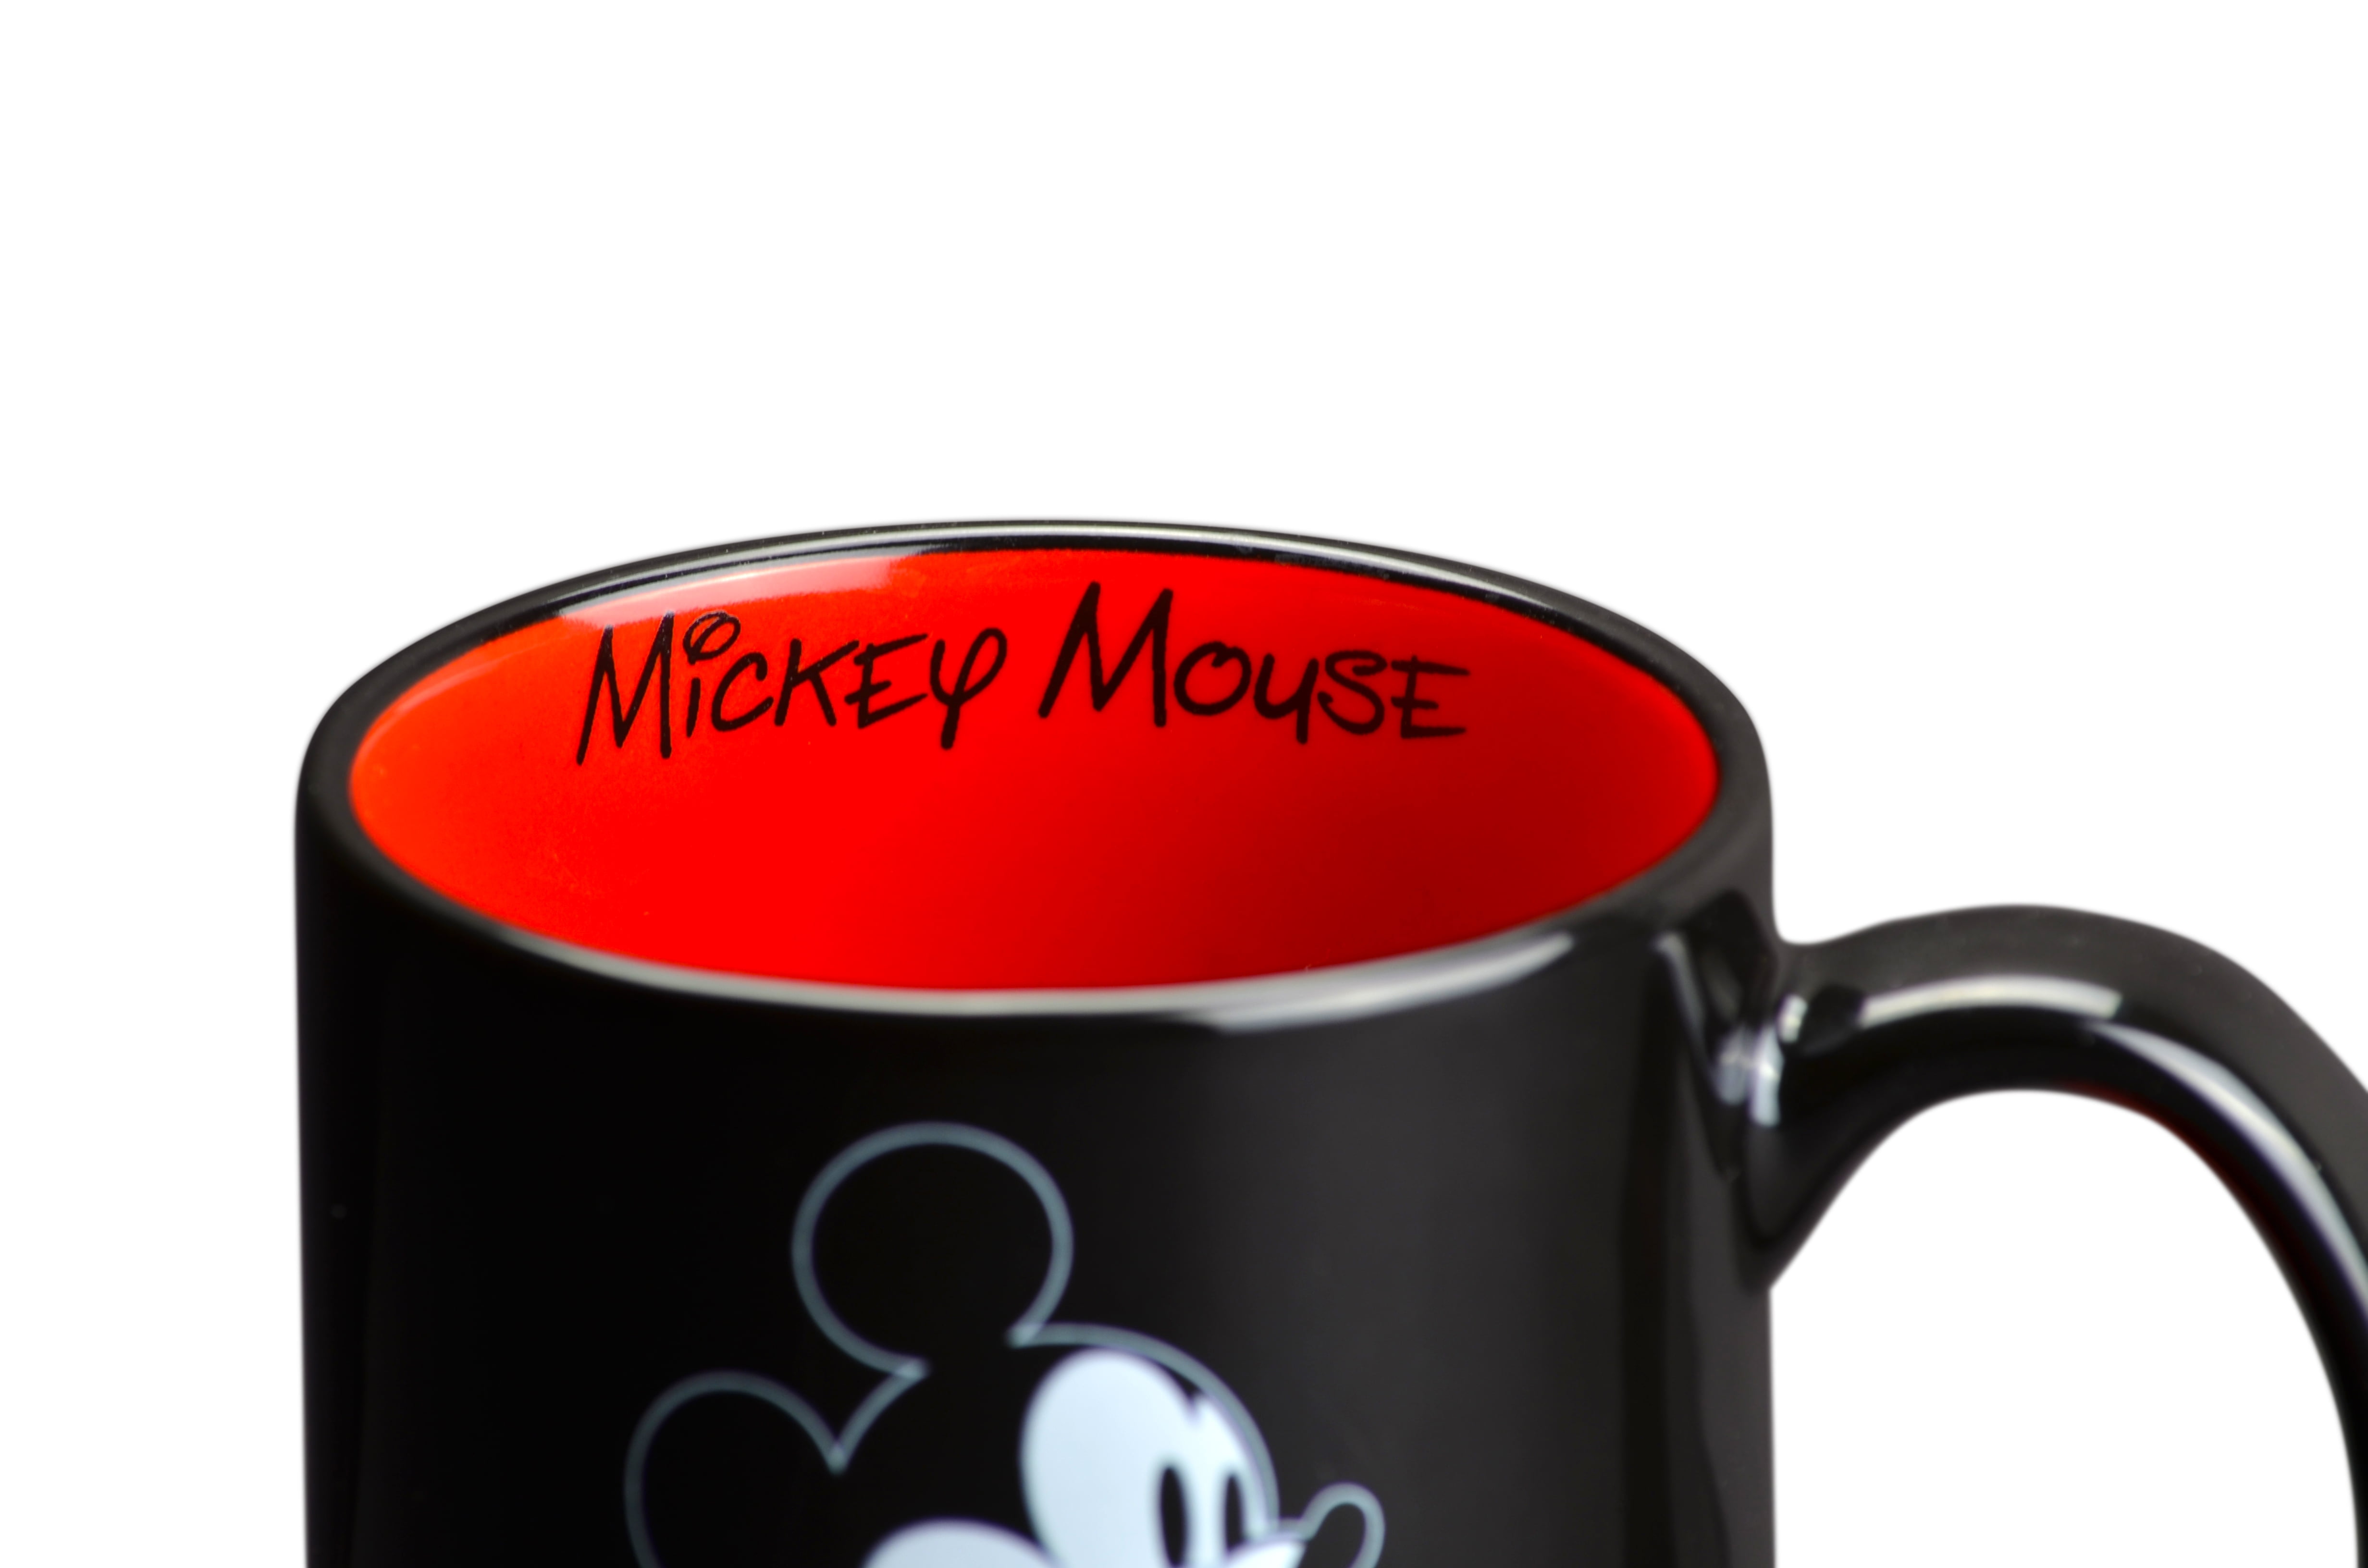 Disney Mickey Mouse Charcoal Mug